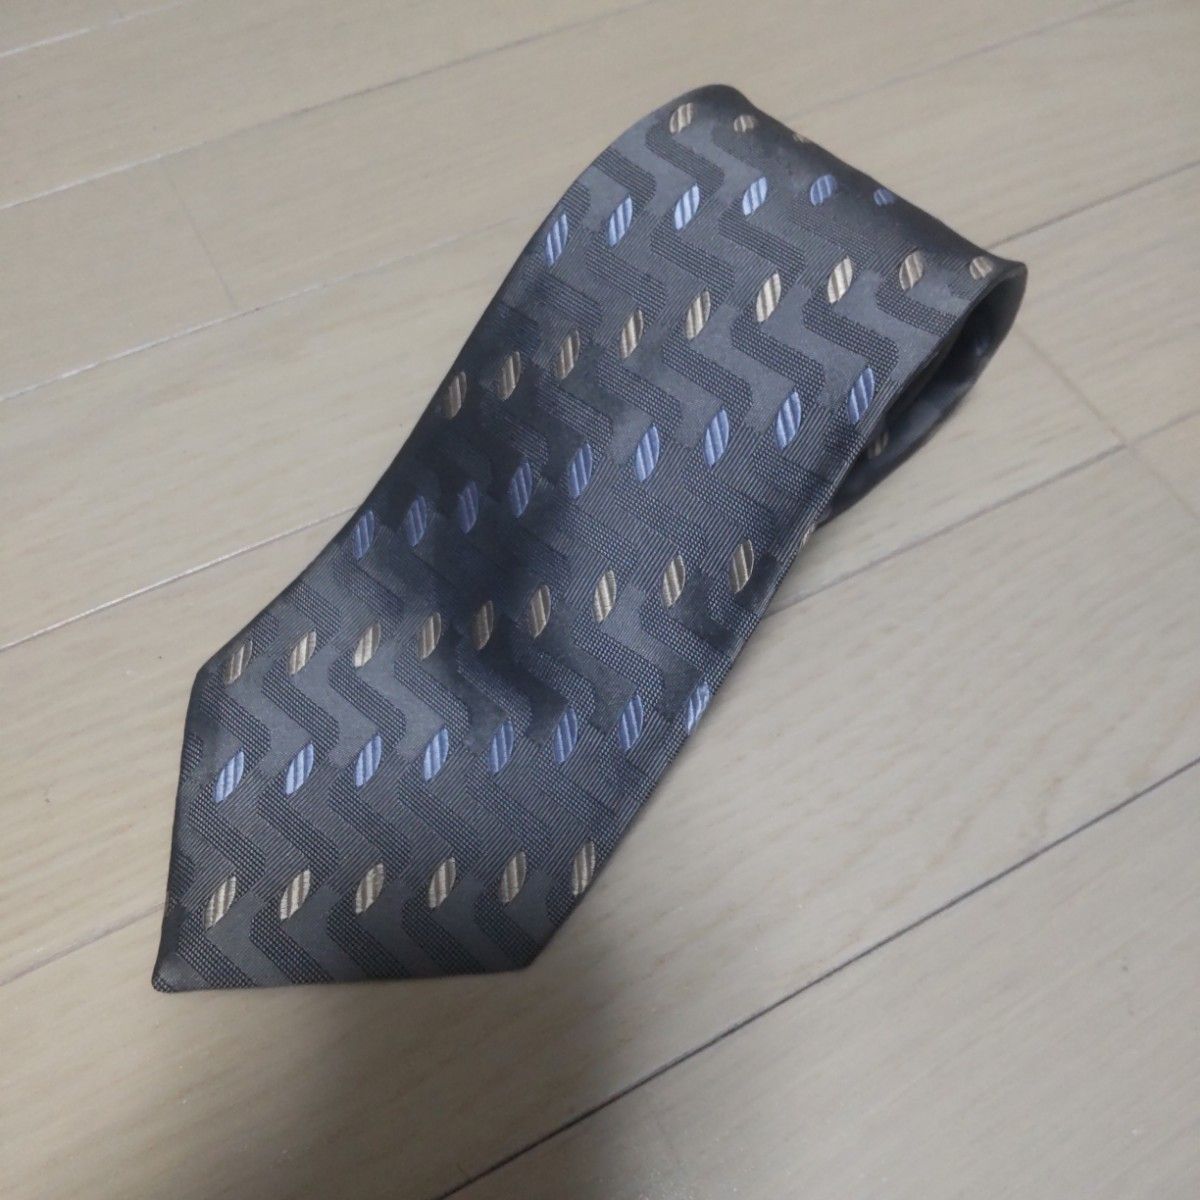 ギラロッシュ 日本製 グレー 小紋柄 シルク 入学式 入社式 ネクタイ